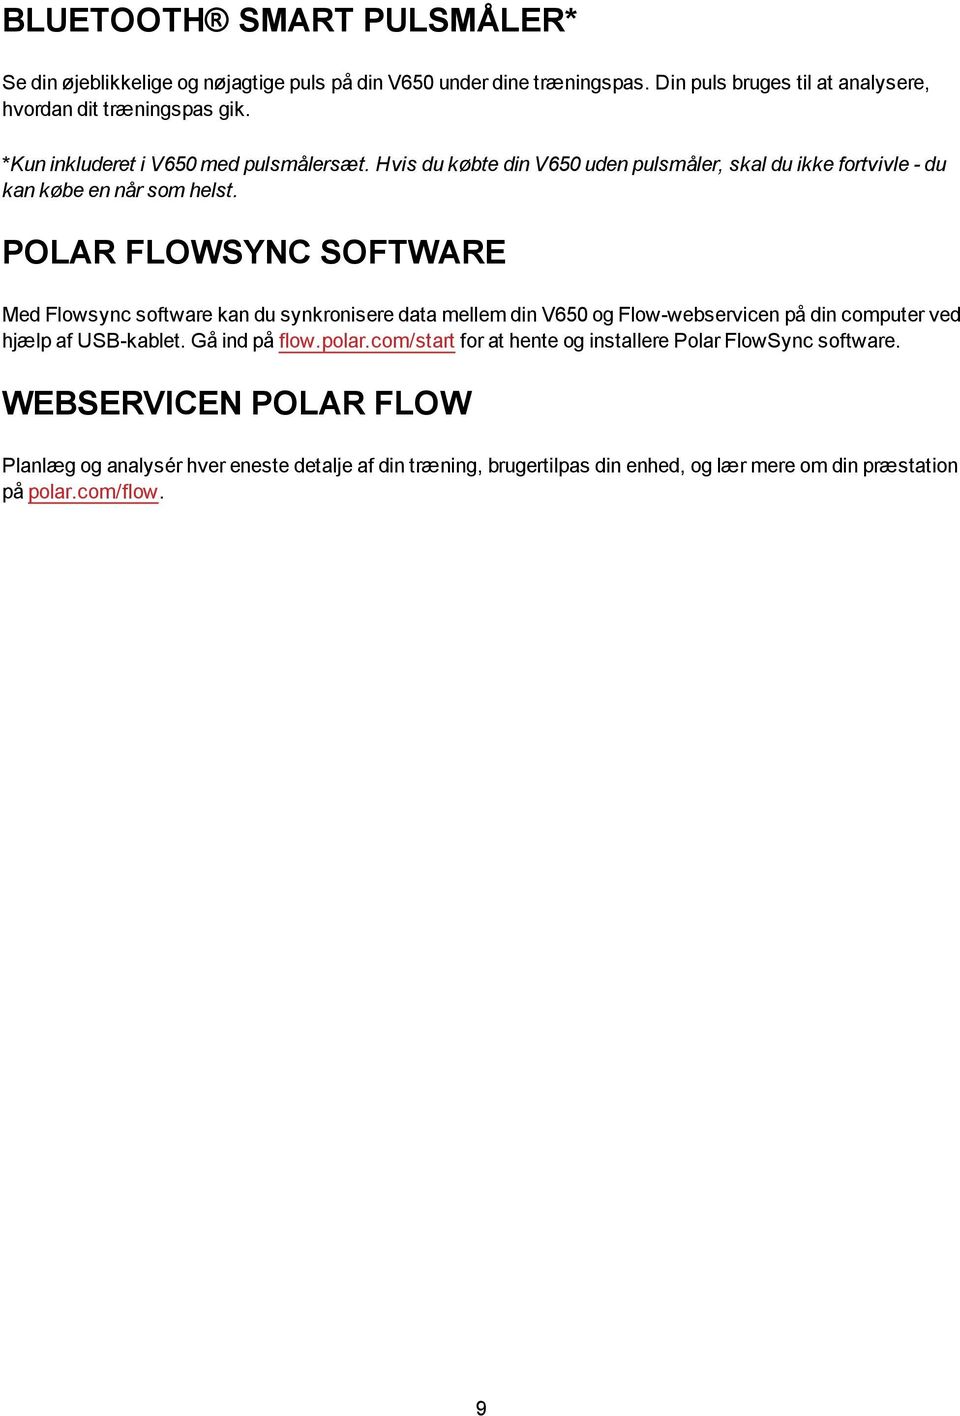 POLAR FLOWSYNC SOFTWARE Med Flowsync software kan du synkronisere data mellem din V650 og Flow-webservicen på din computer ved hjælp af USB-kablet. Gå ind på flow.polar.